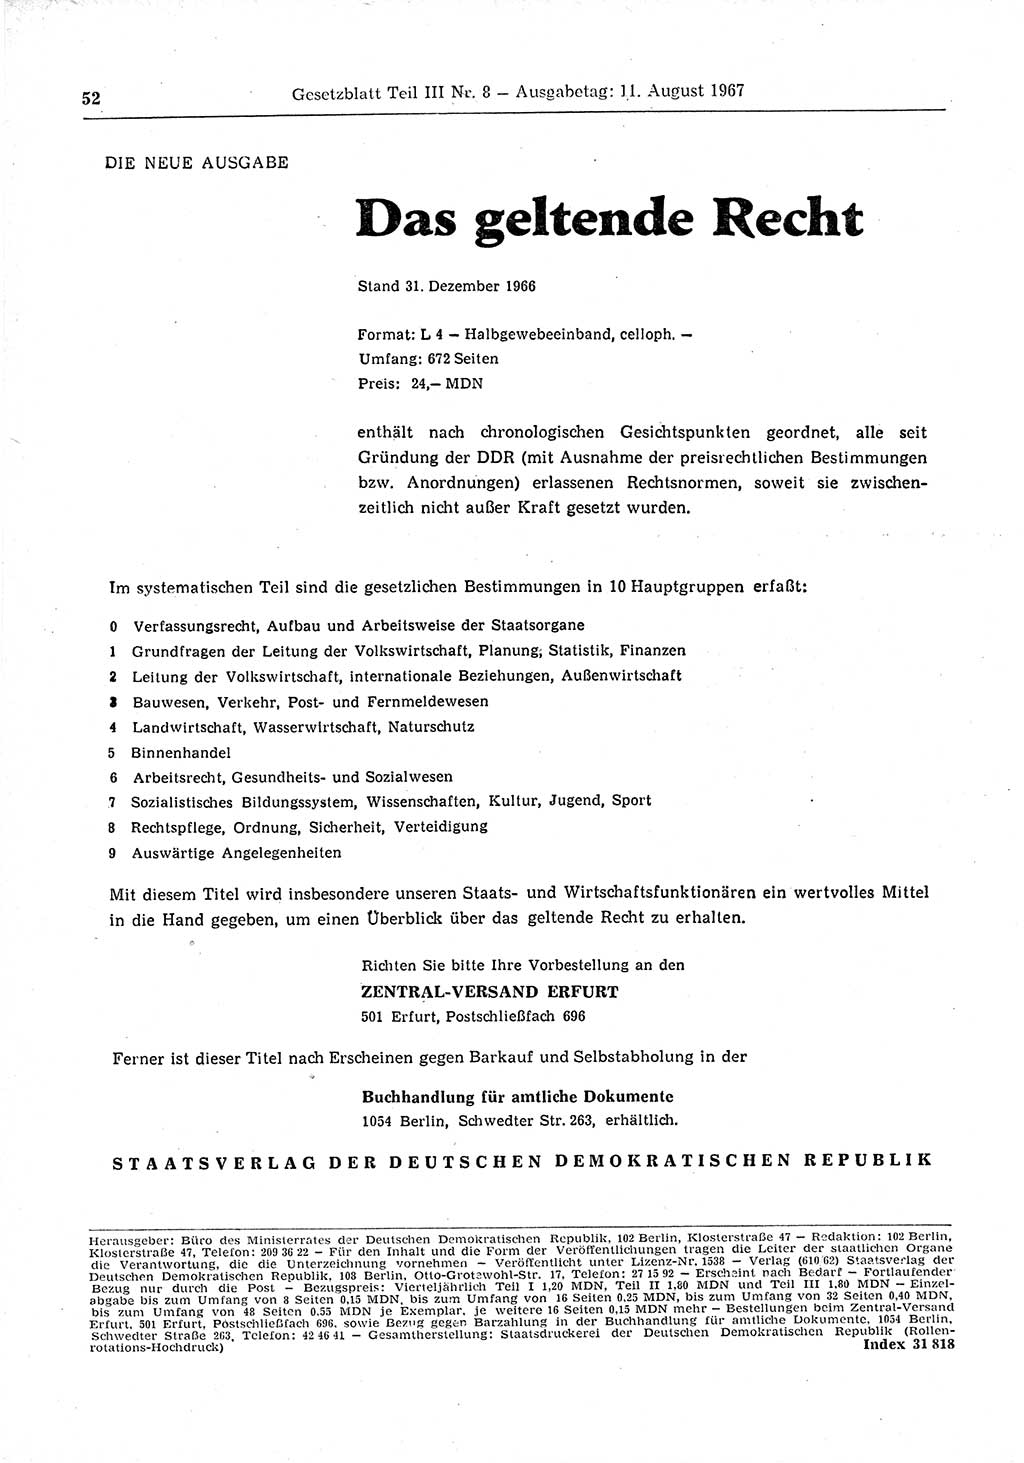 Gesetzblatt (GBl.) der Deutschen Demokratischen Republik (DDR) Teil ⅠⅠⅠ 1967, Seite 52 (GBl. DDR ⅠⅠⅠ 1967, S. 52)